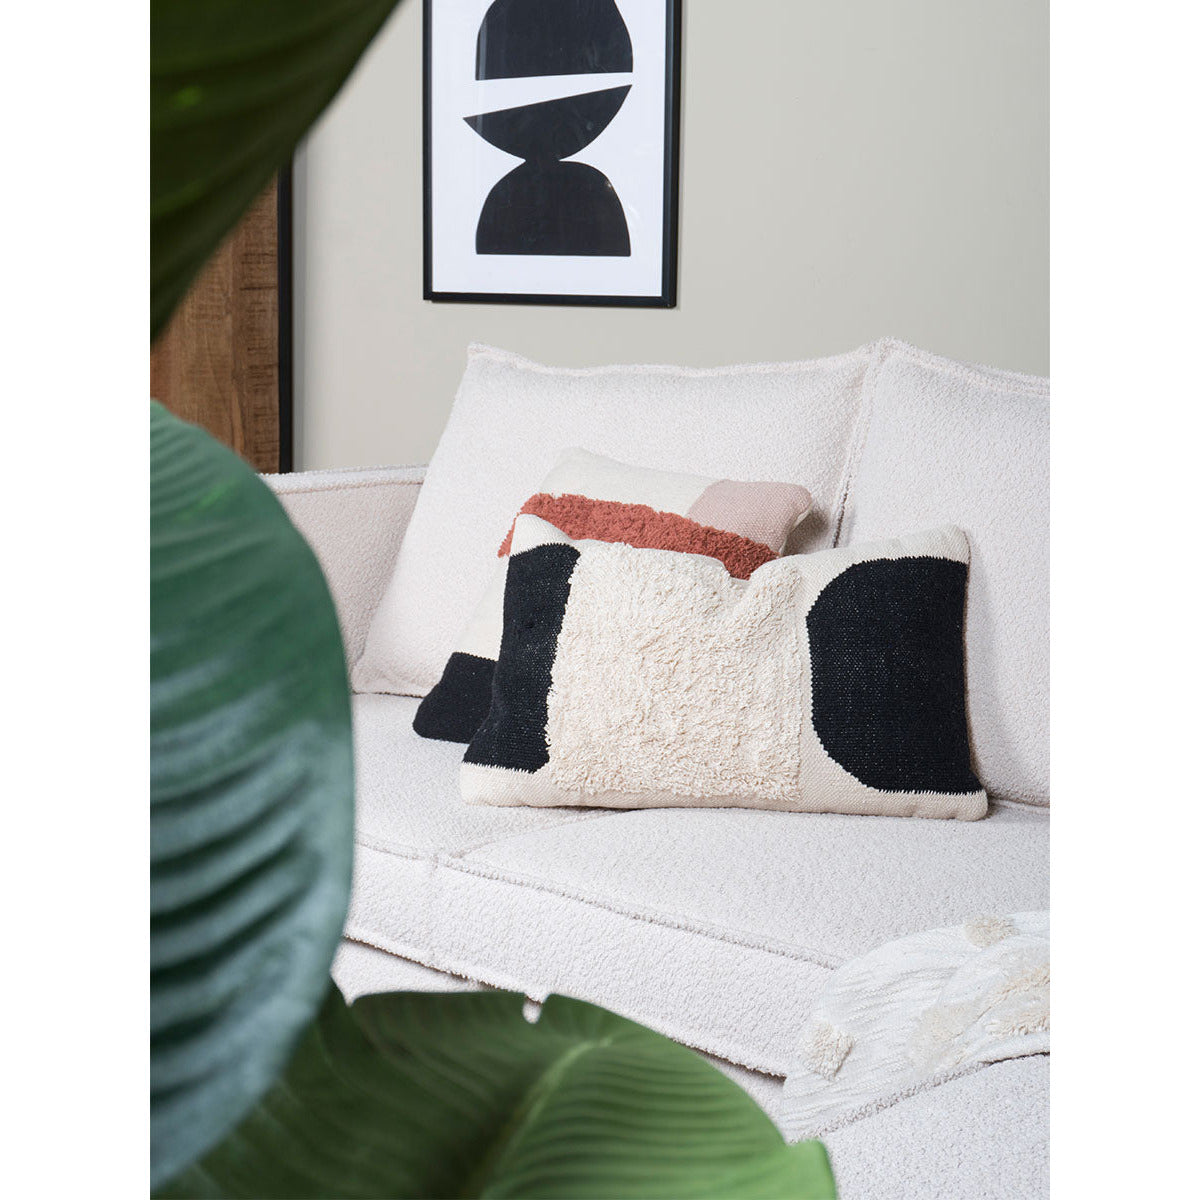 Cushion Miro Cream 40 x 60 cm